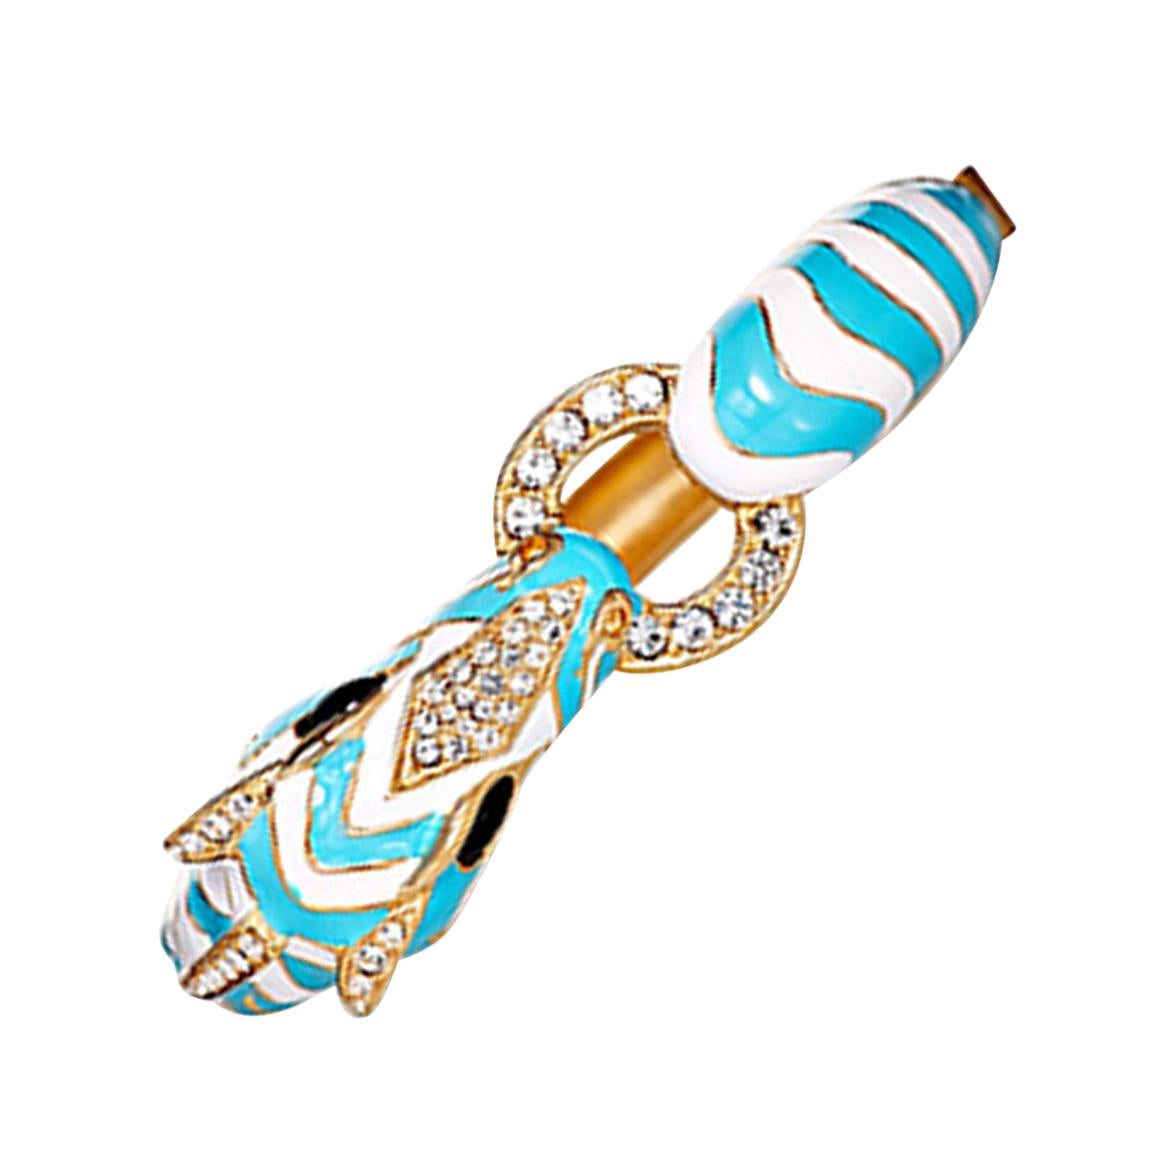 CINER Zebra Animal Bracelet in Turquoise